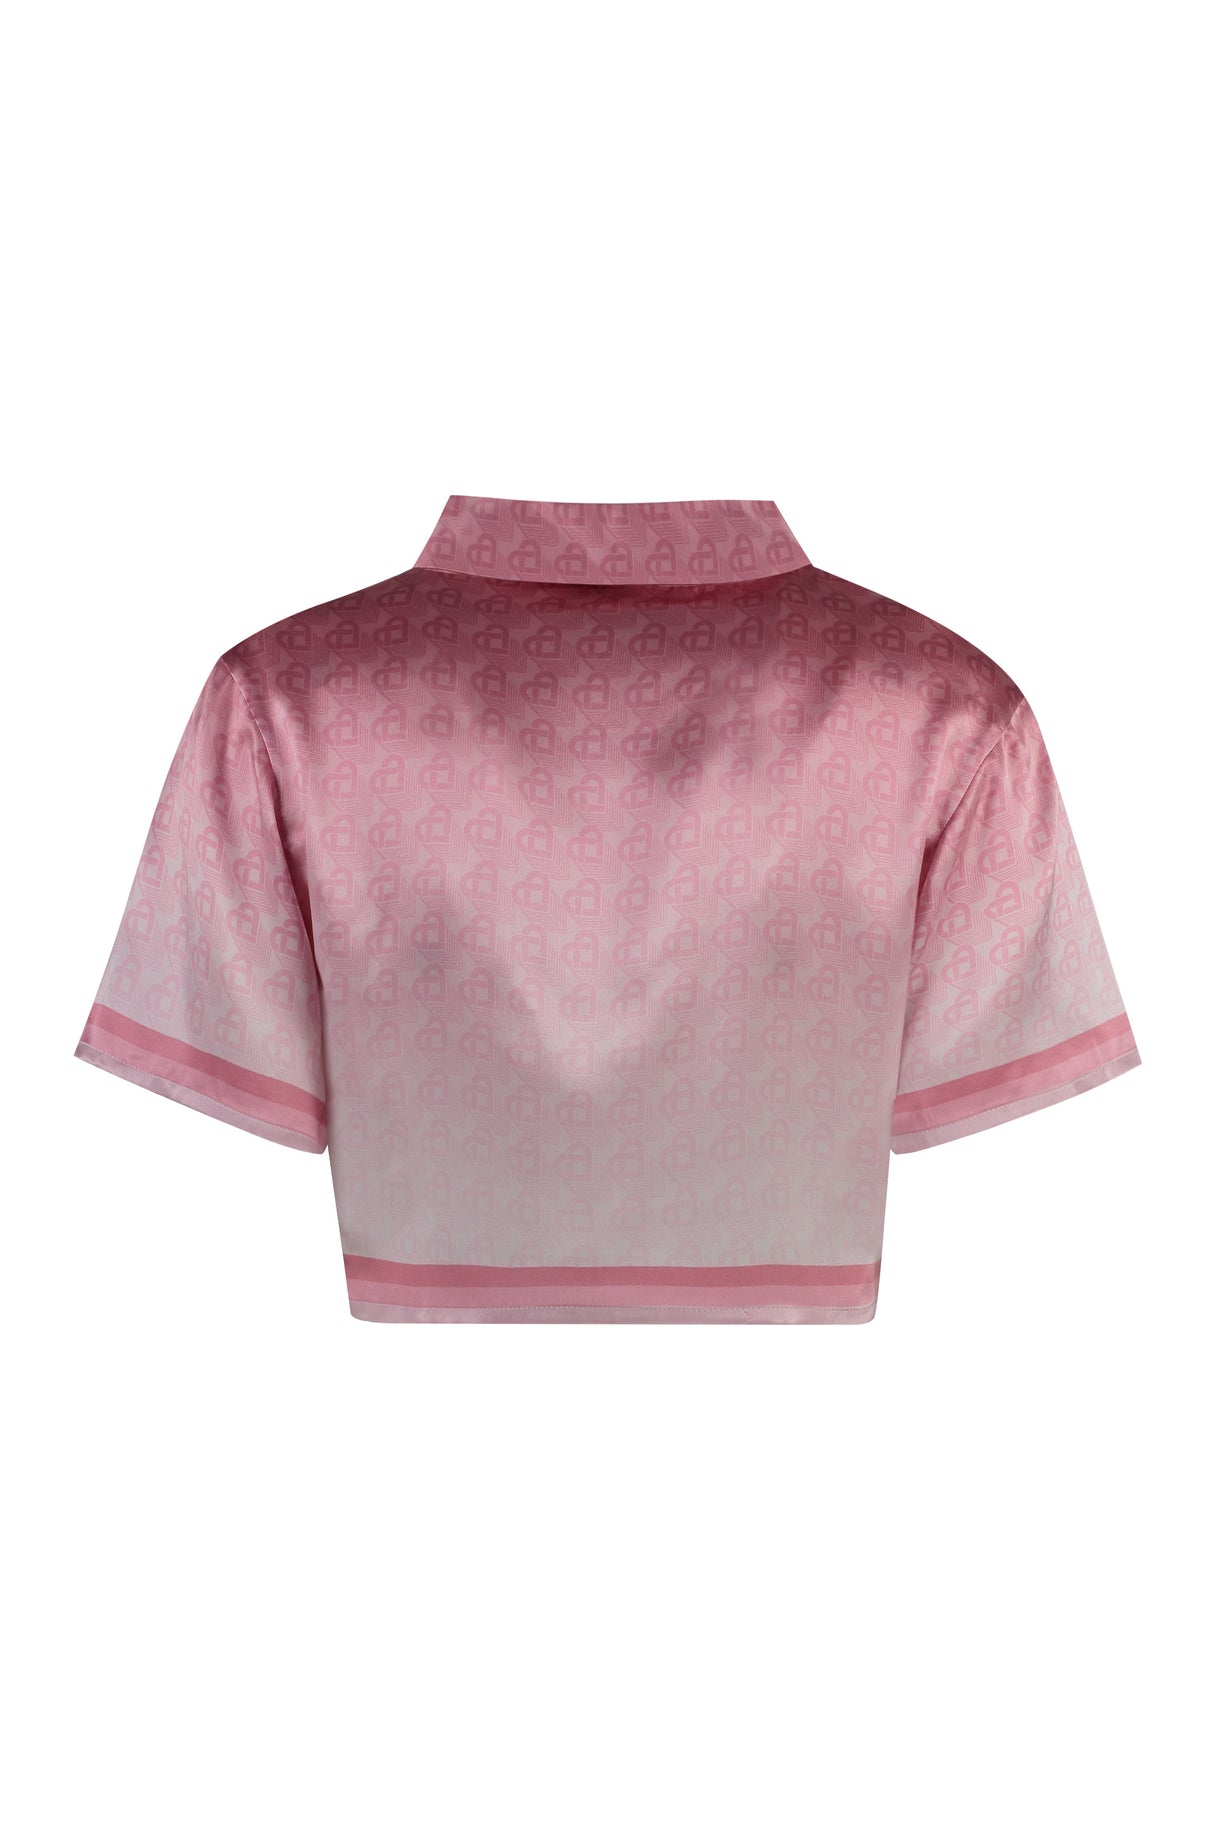 CASABLANCA Pink Printed Silk Crop Top - FW23 Collection